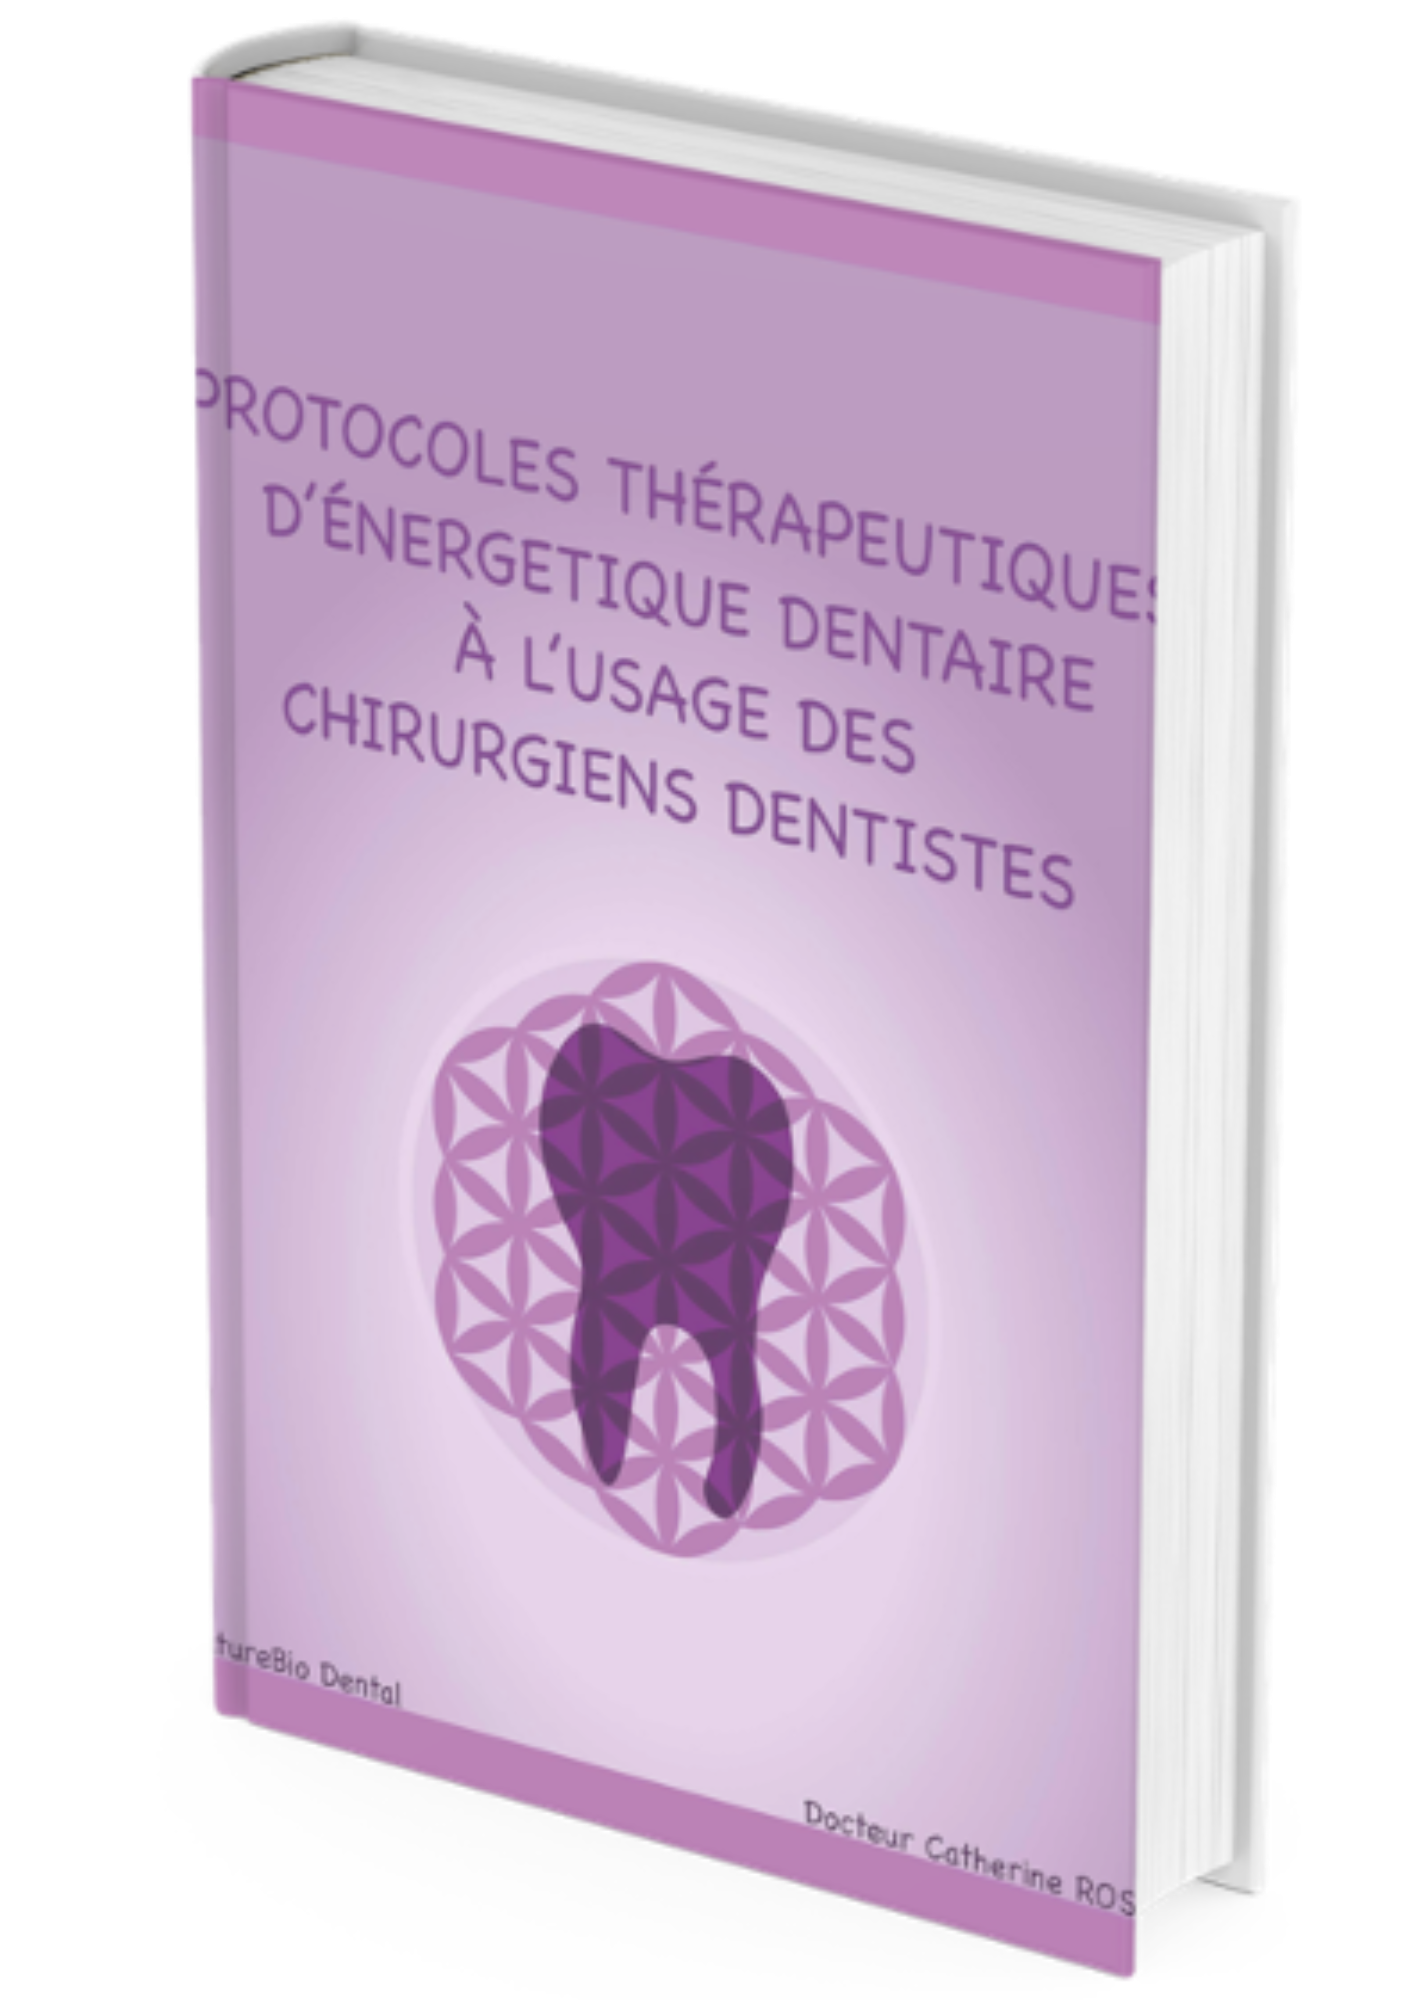 Livre Protocoles therapeutiques pour chirurgiens dentistes